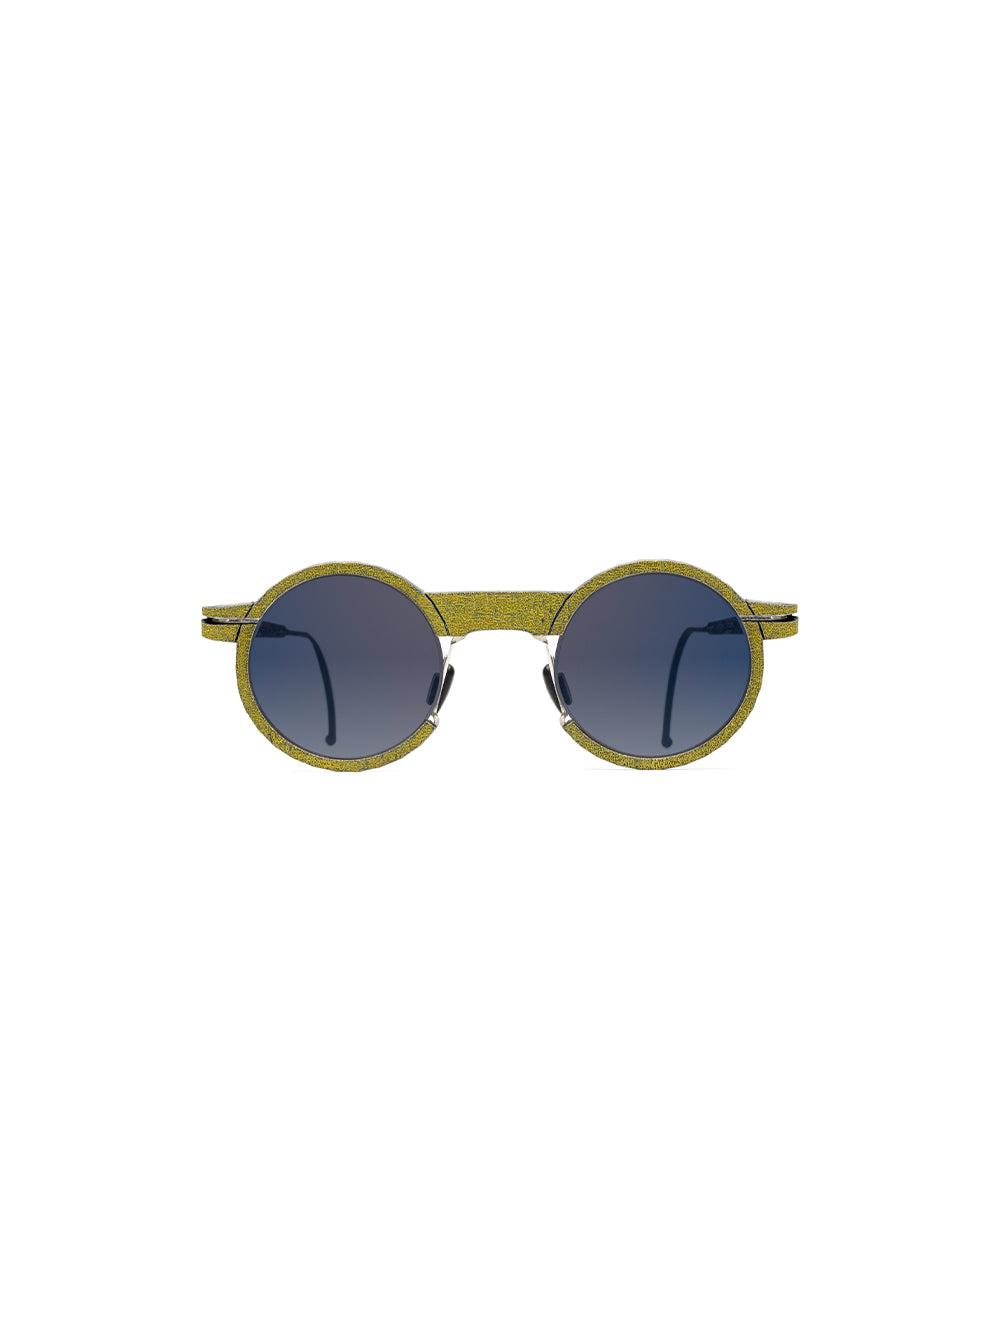 IL01 Sunglasses